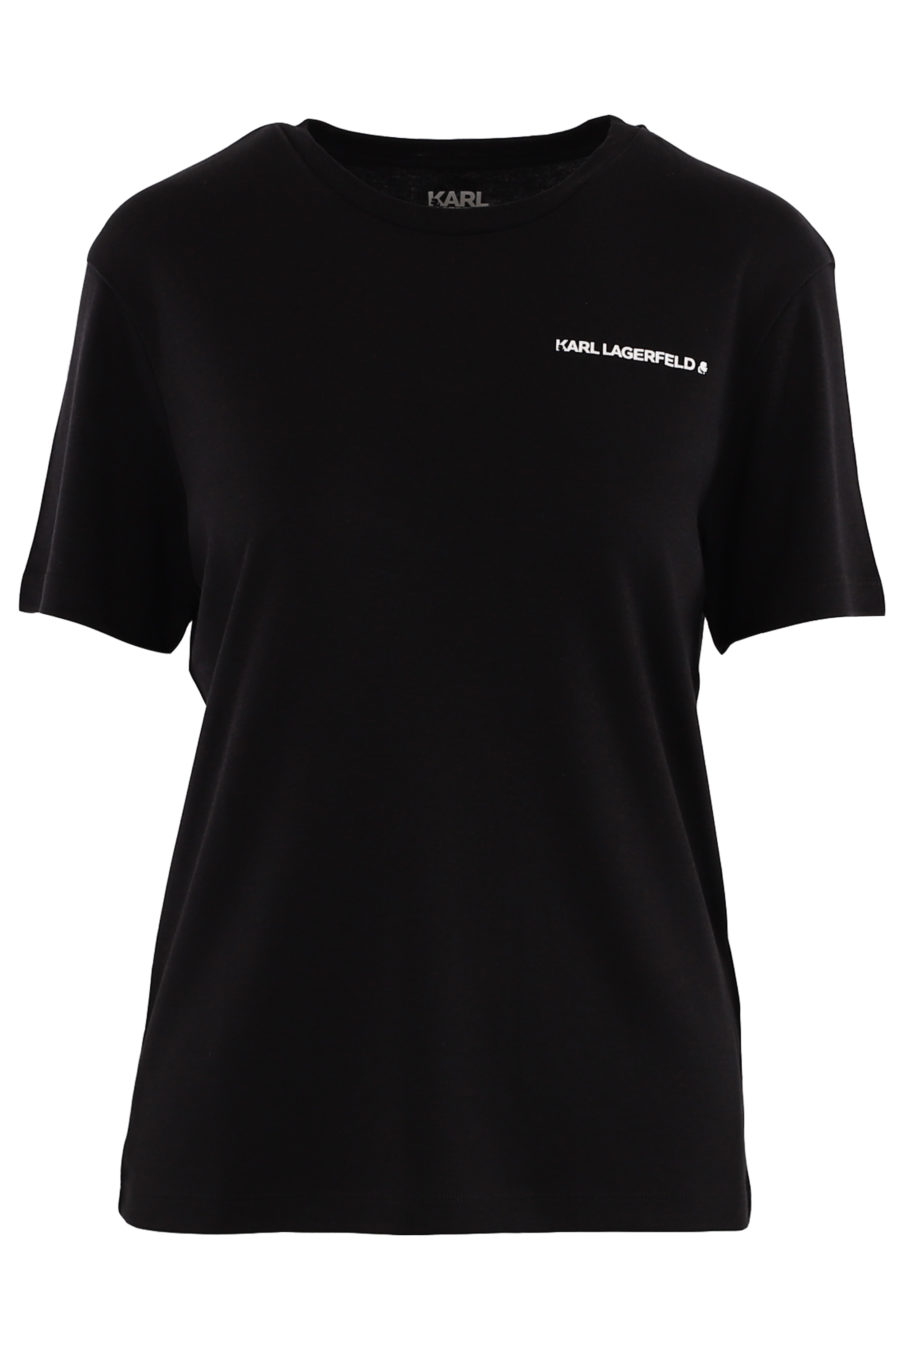 T-shirt unisexe noir avec logo - 987c3f0aa544f666363ed739896175175d93b2efb9d